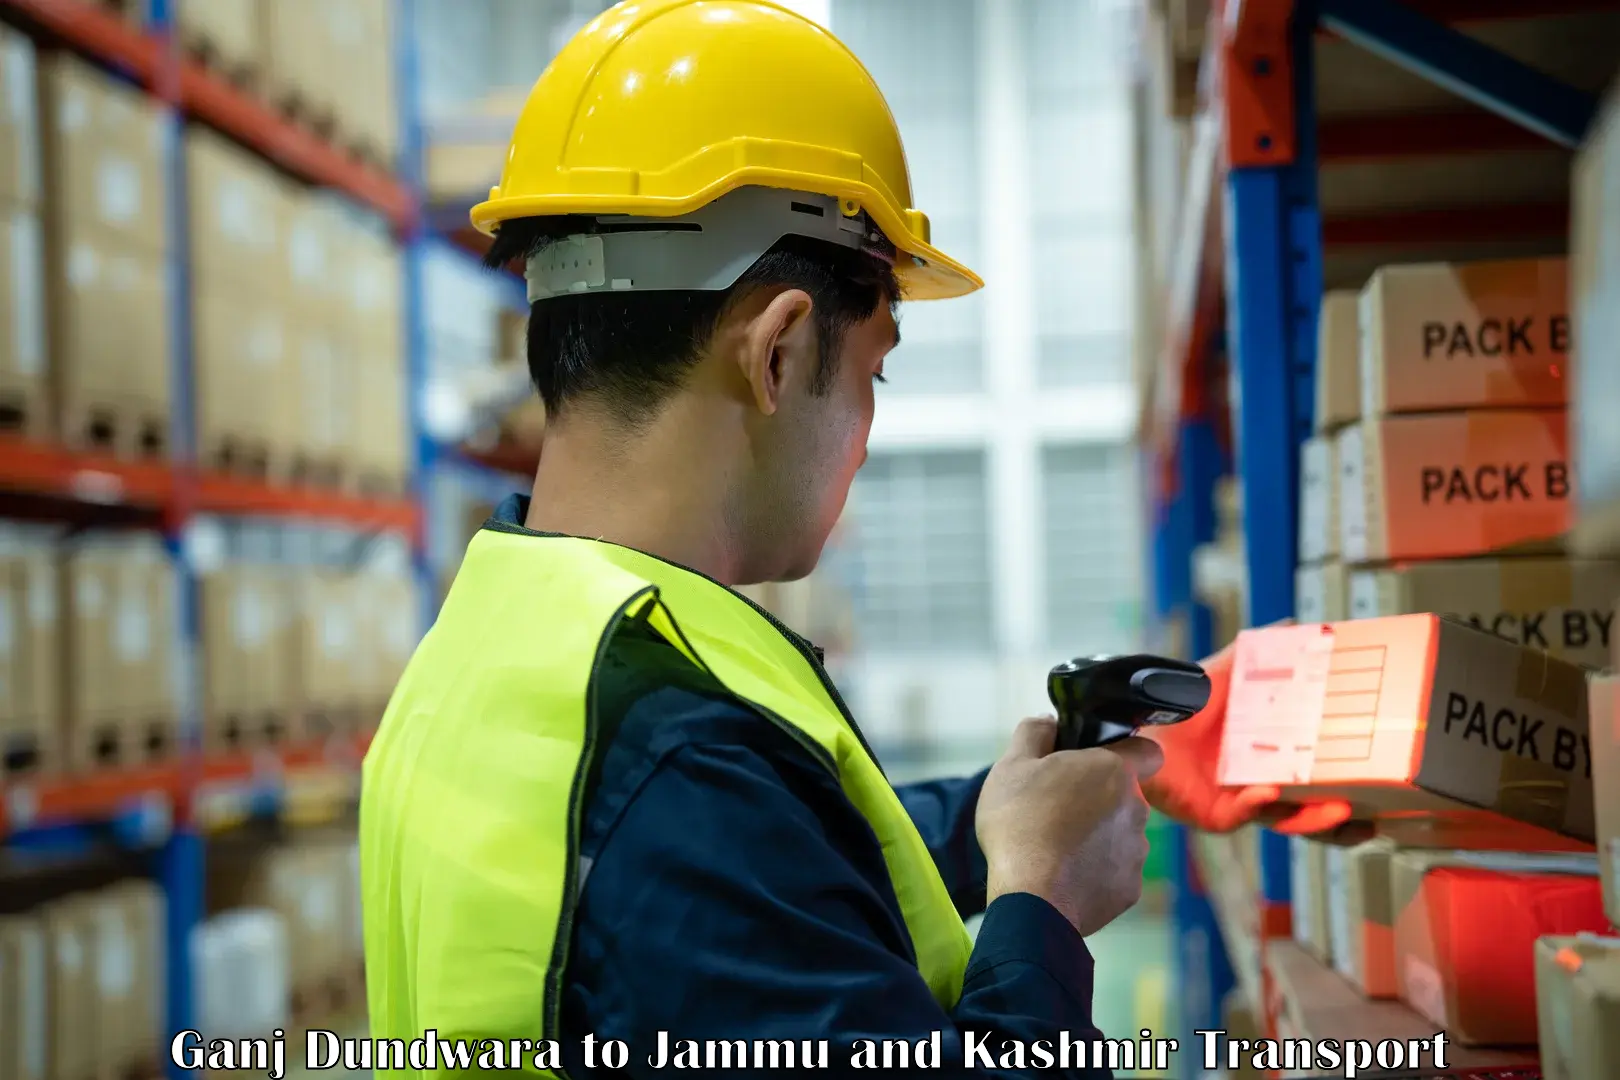 Shipping partner Ganj Dundwara to Jammu and Kashmir